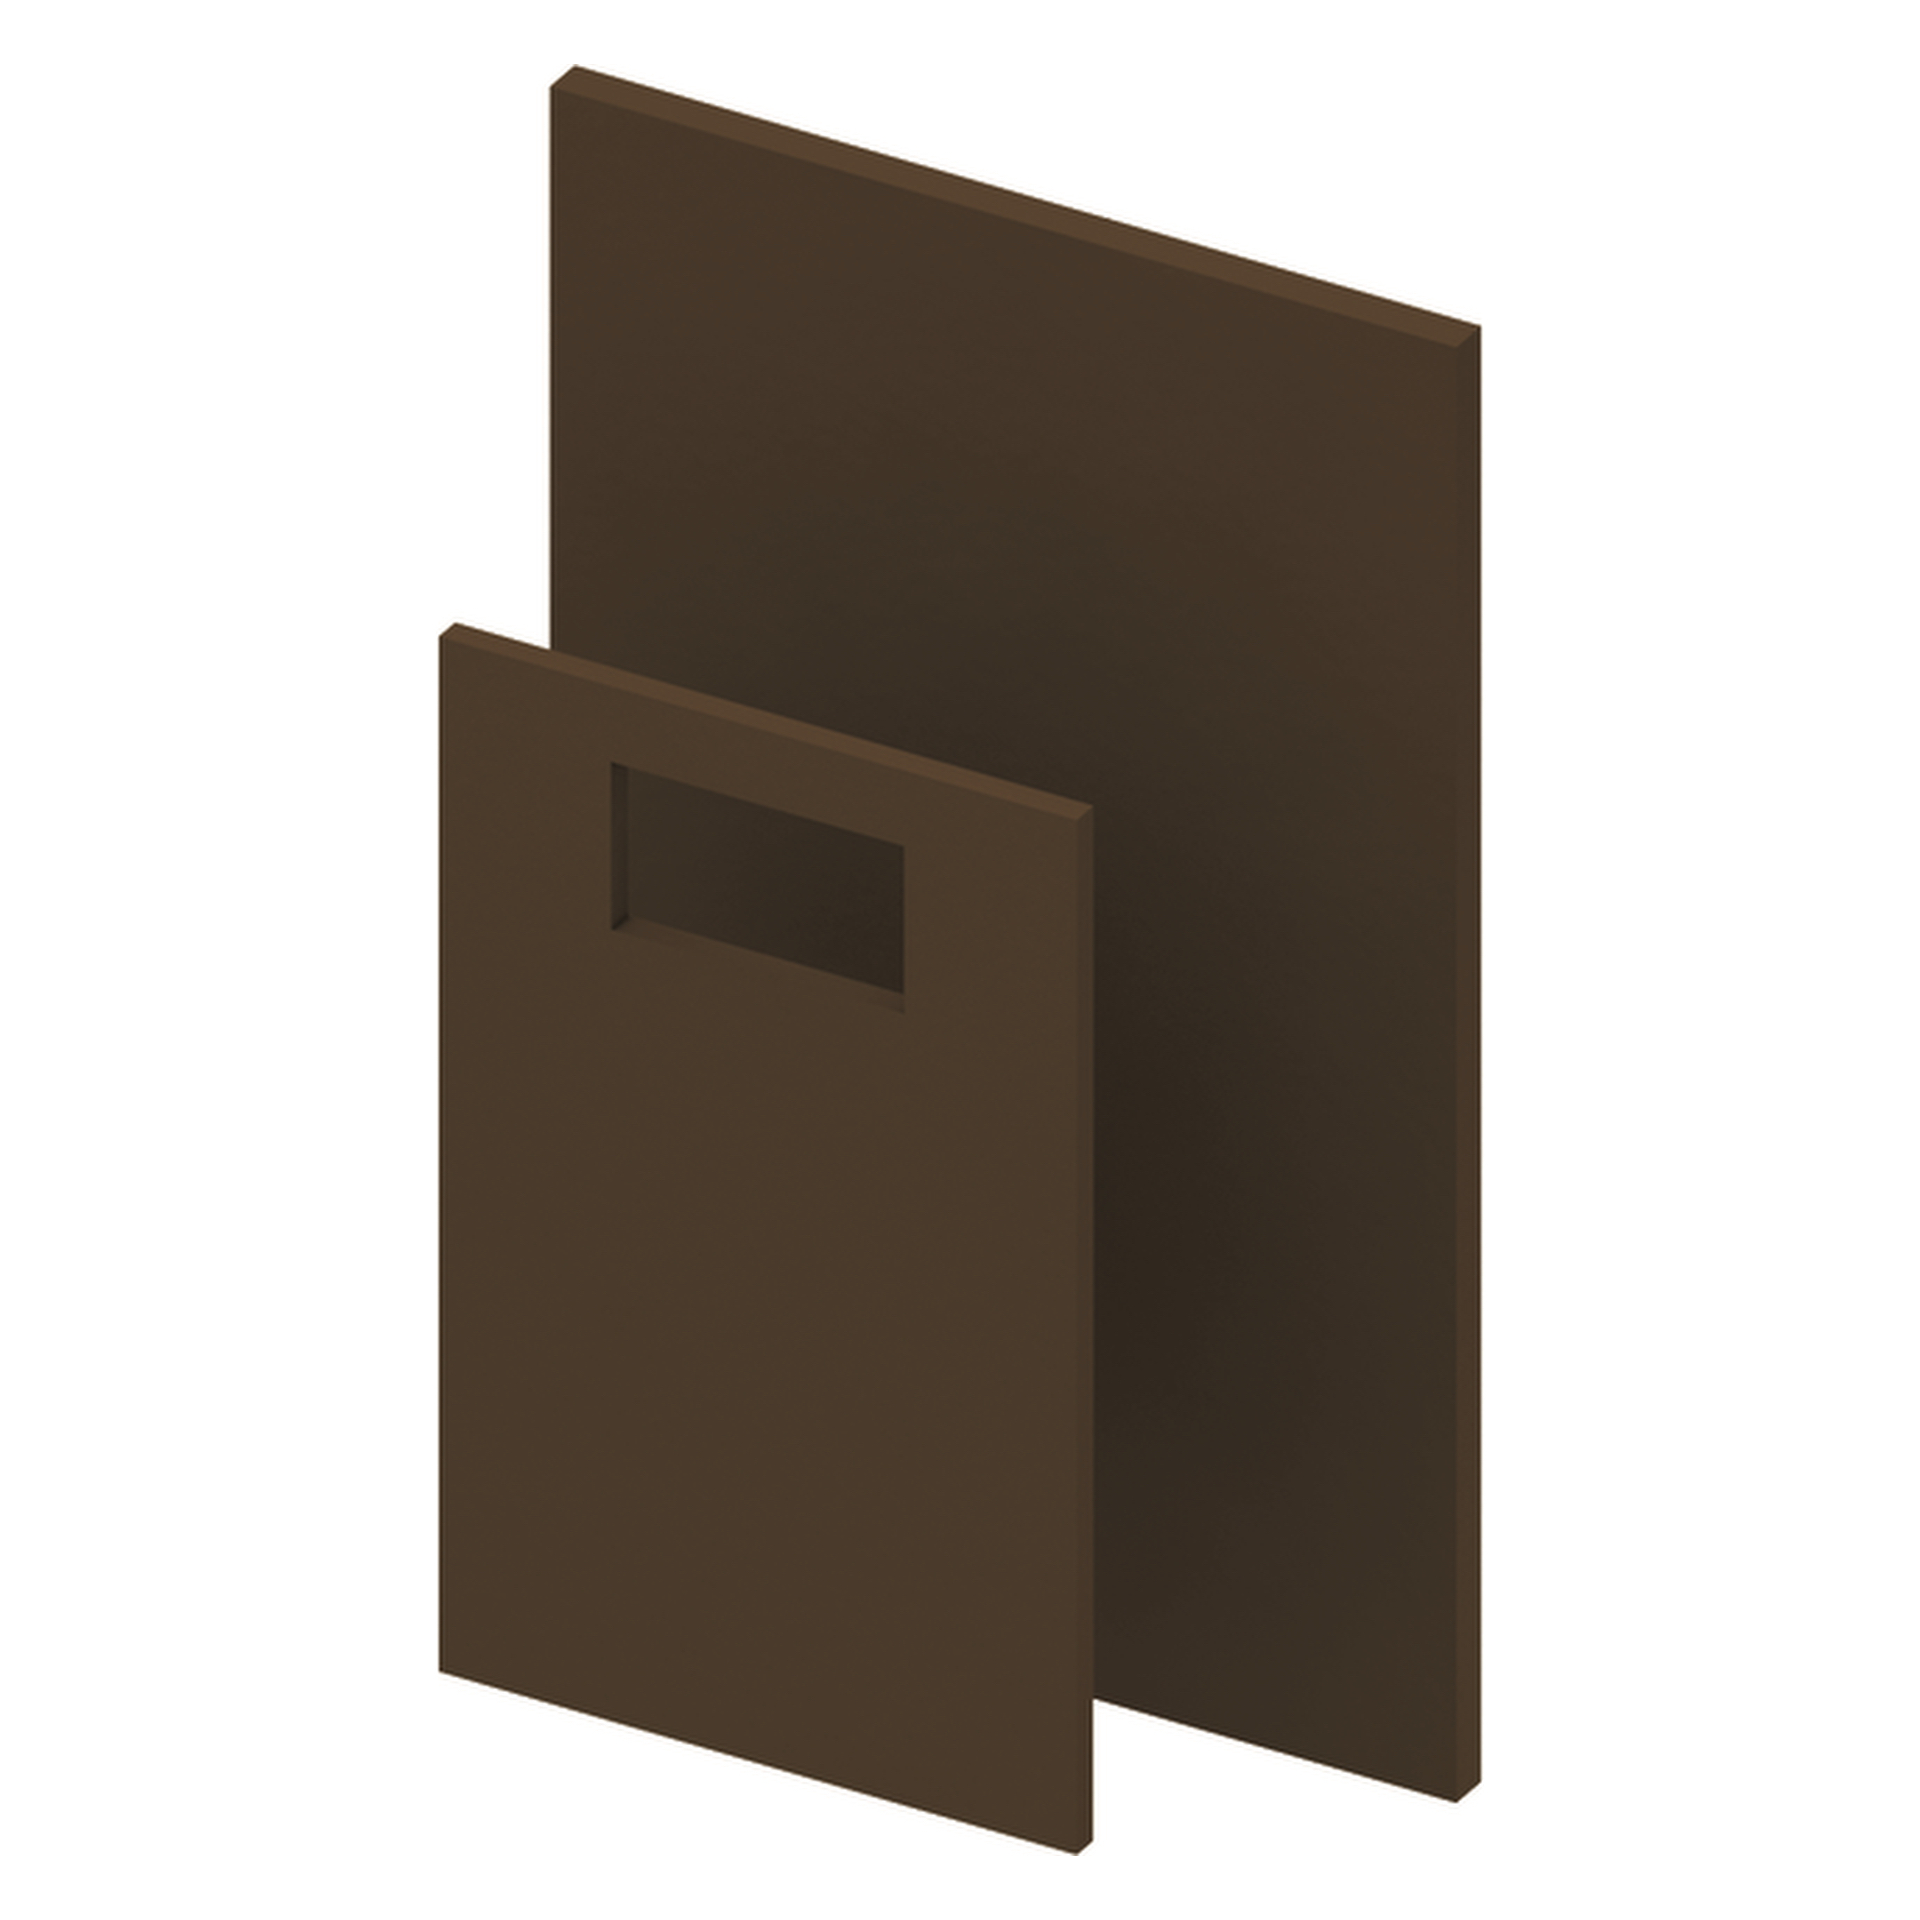 TECEprofil Brandschutzplattenset für Standard WC-Module mit TECE-Sülkasten